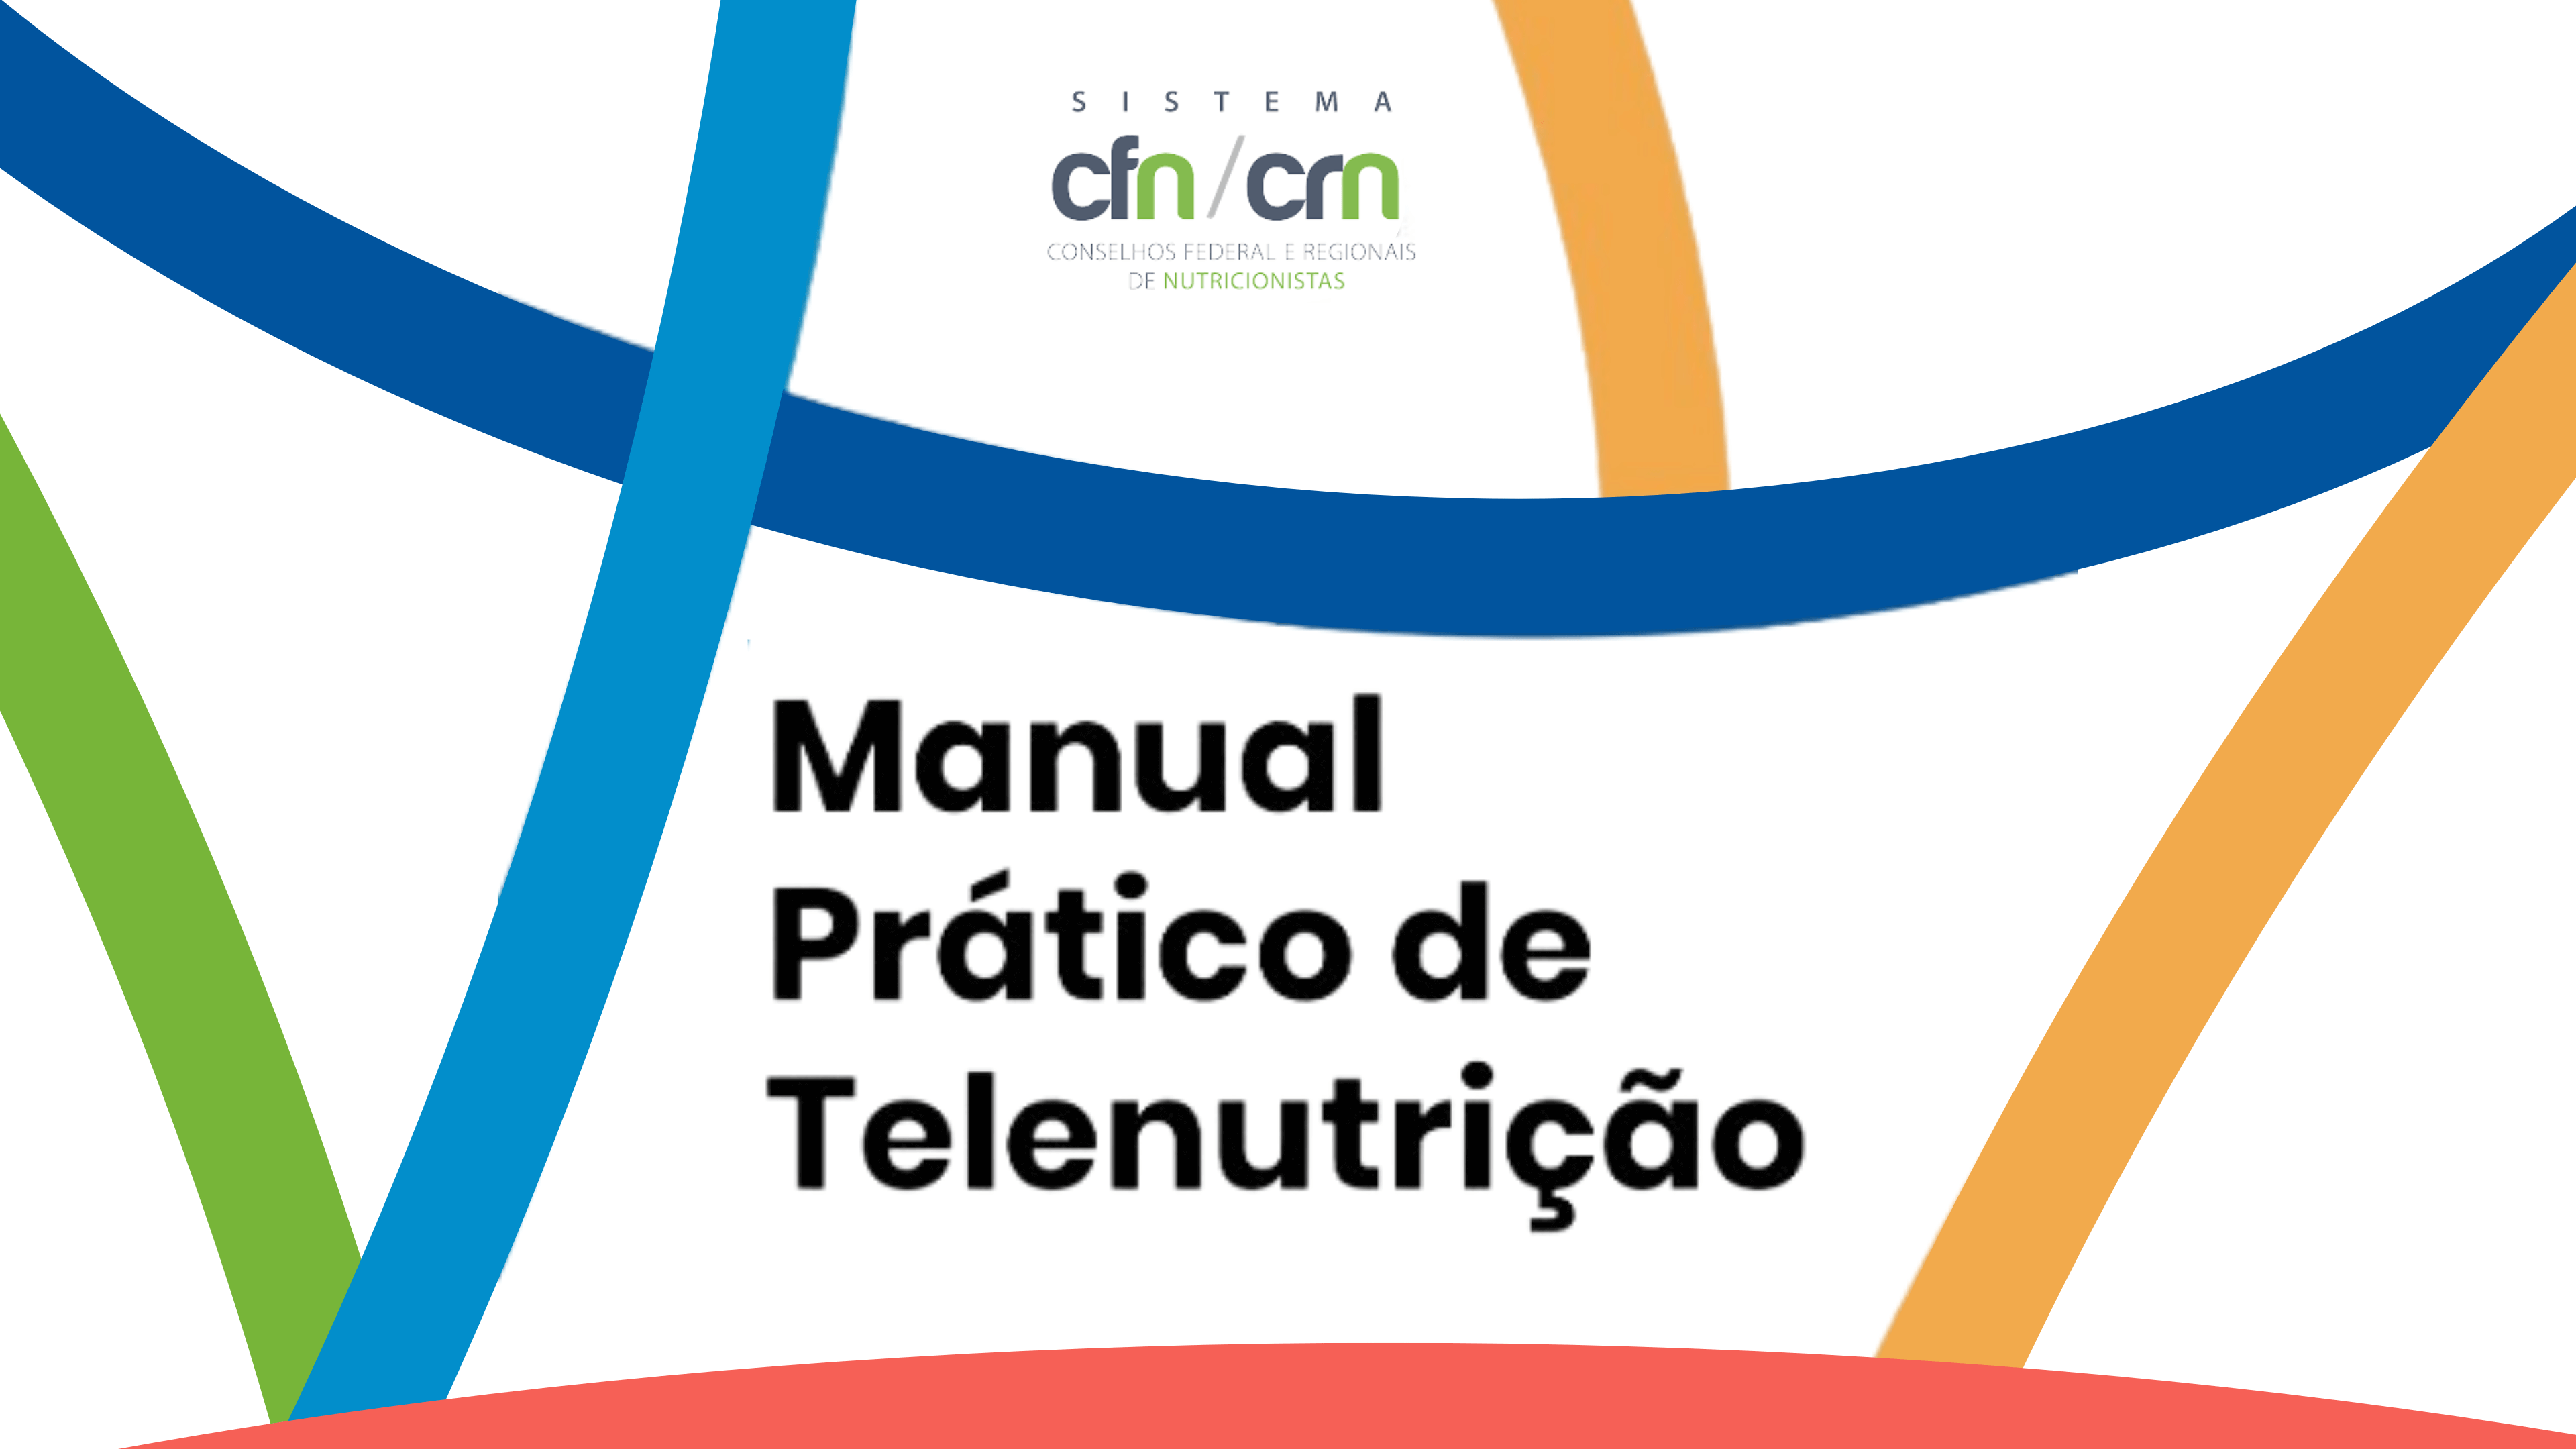 Manual Prático de Telenutrição oferece orientações sobre a Teleconsulta